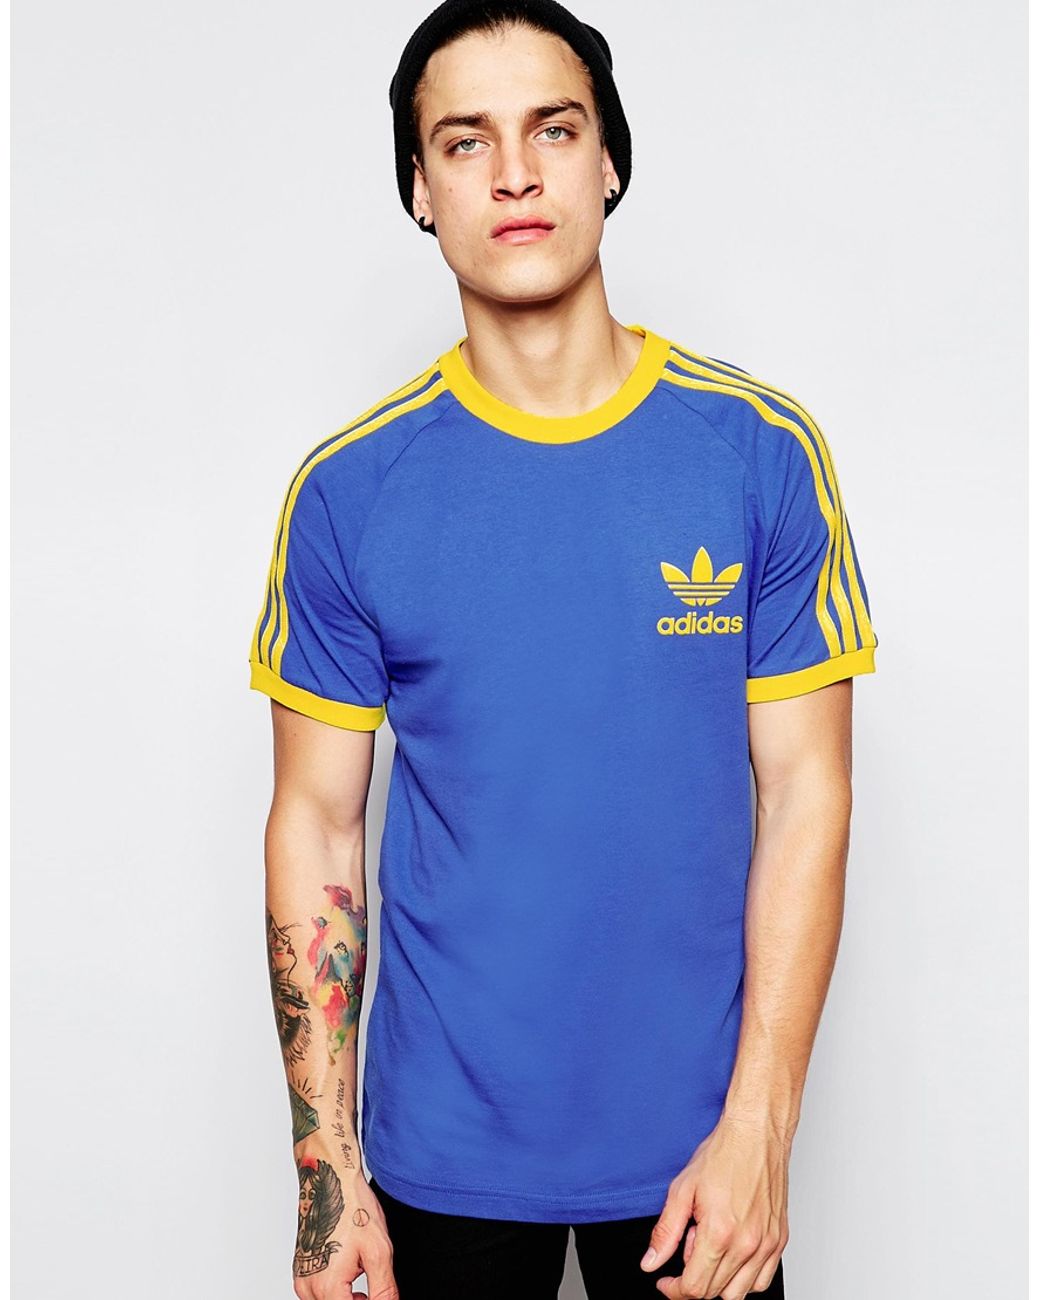 adidas Originals California T-shirt Ab7599 in Blue for Men | Lyst Canada